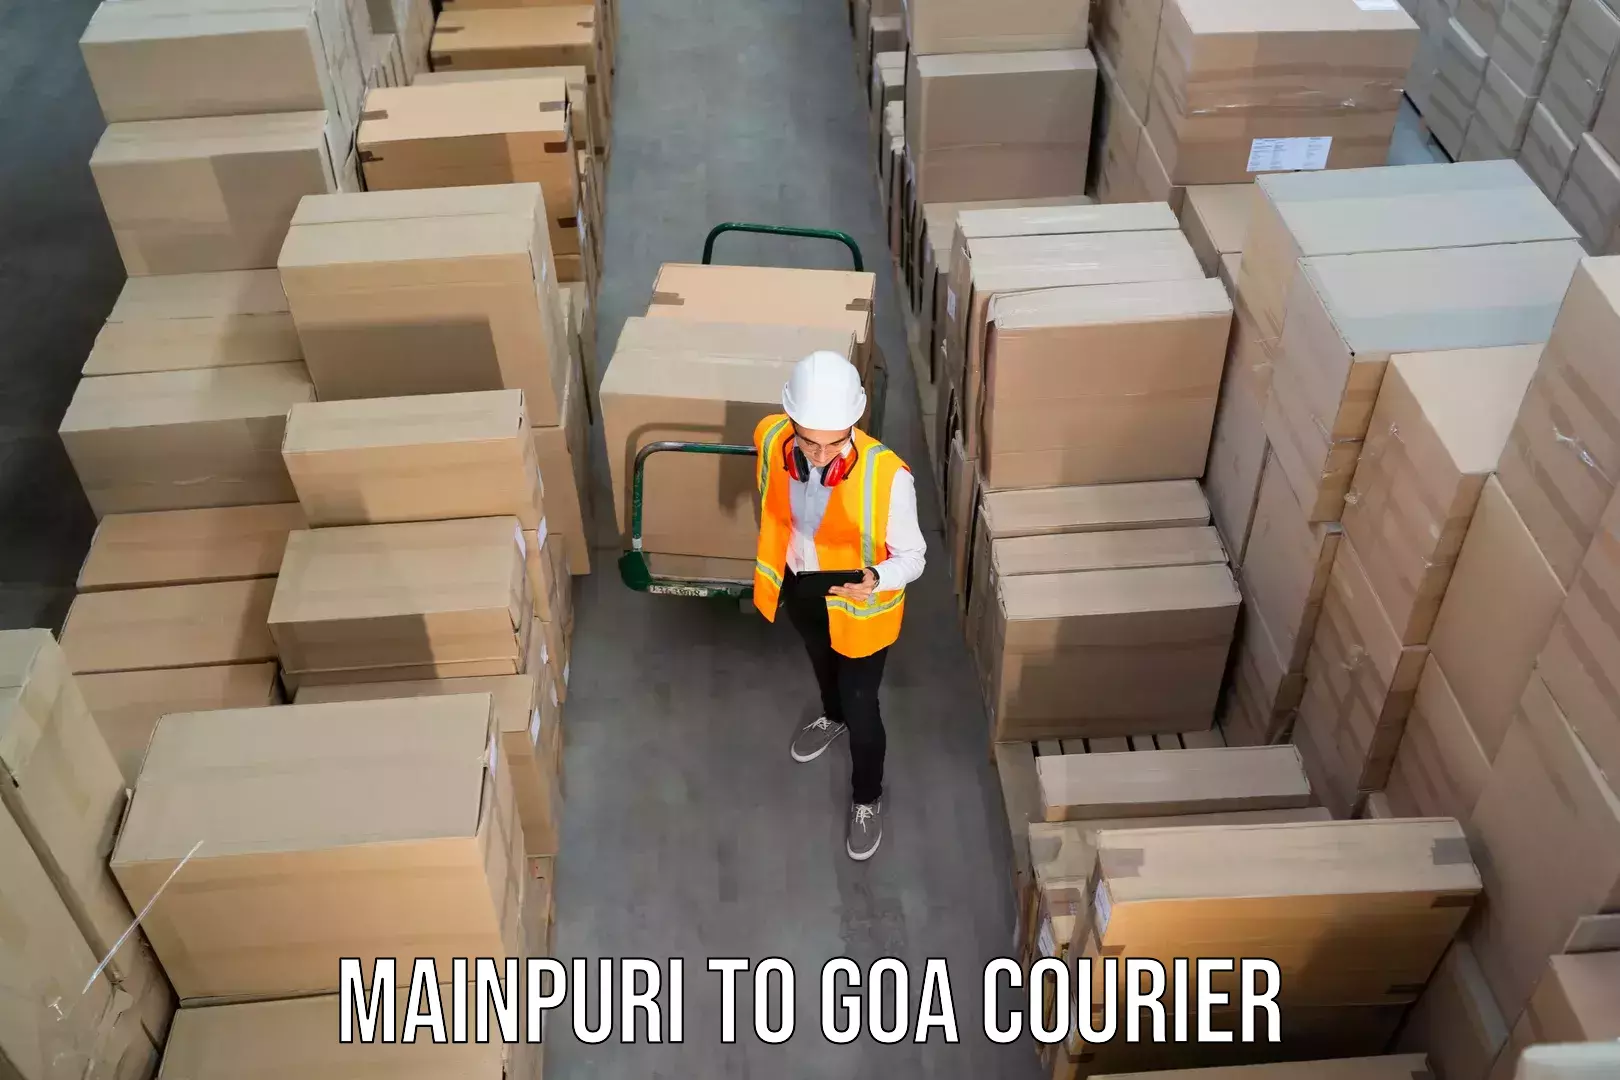 Multi-city courier Mainpuri to Panjim